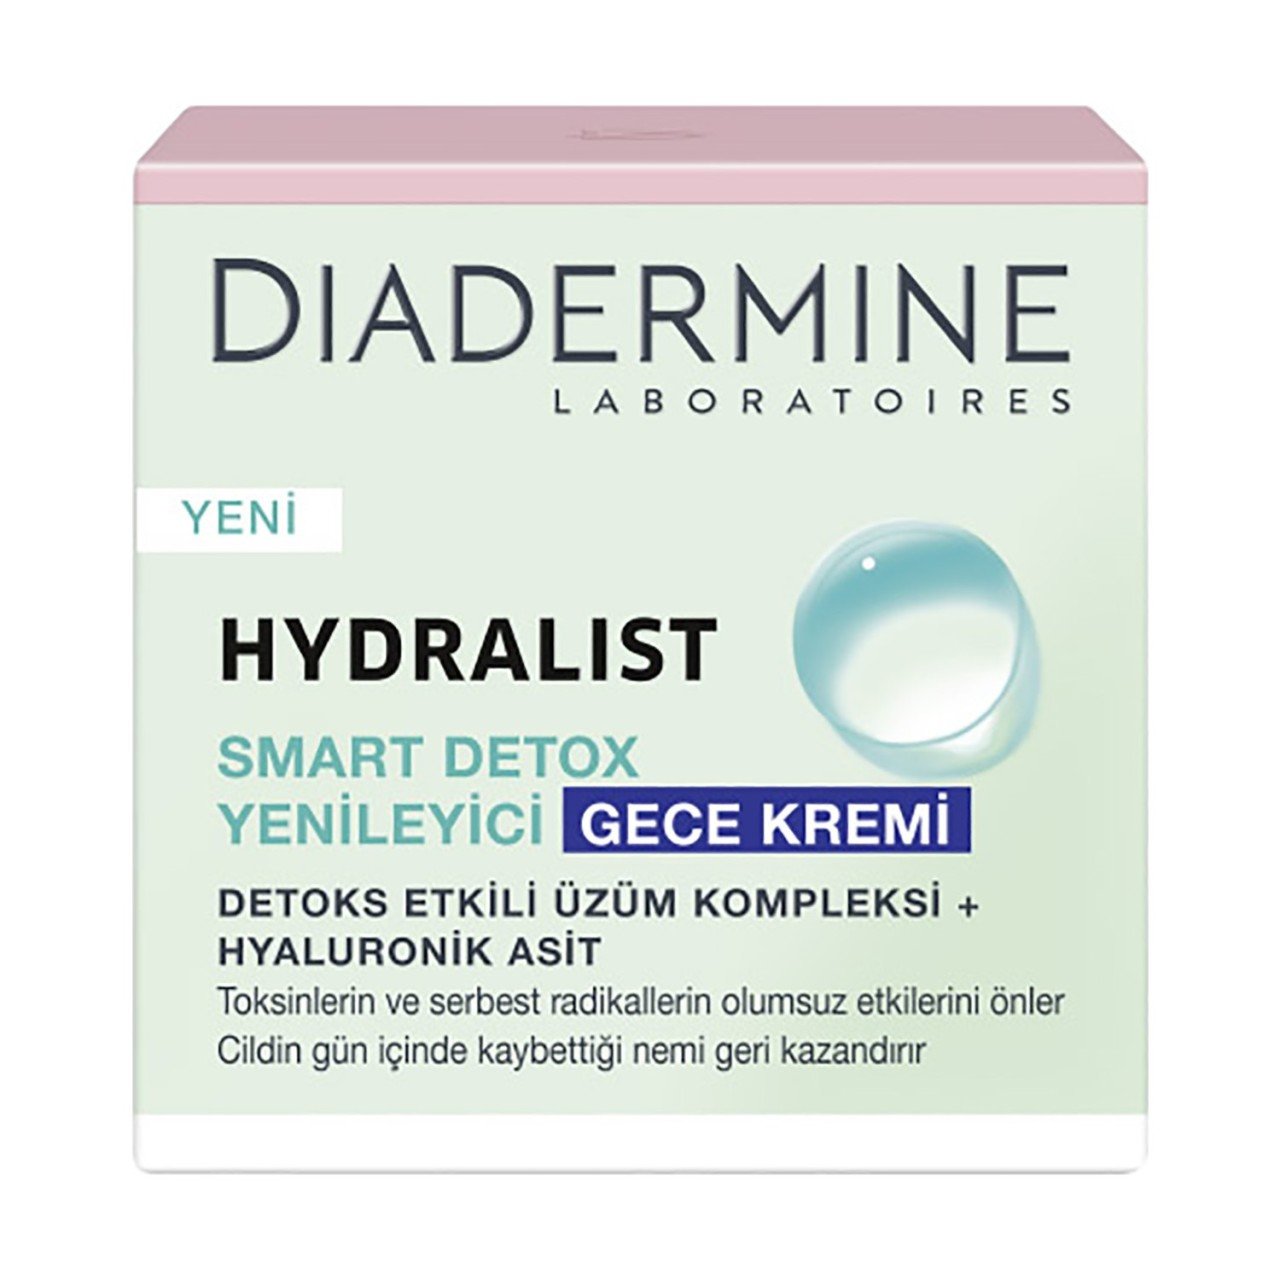 Diadermine Hydralist Smart Detox Yenileyici Gece Kremi 50 ML